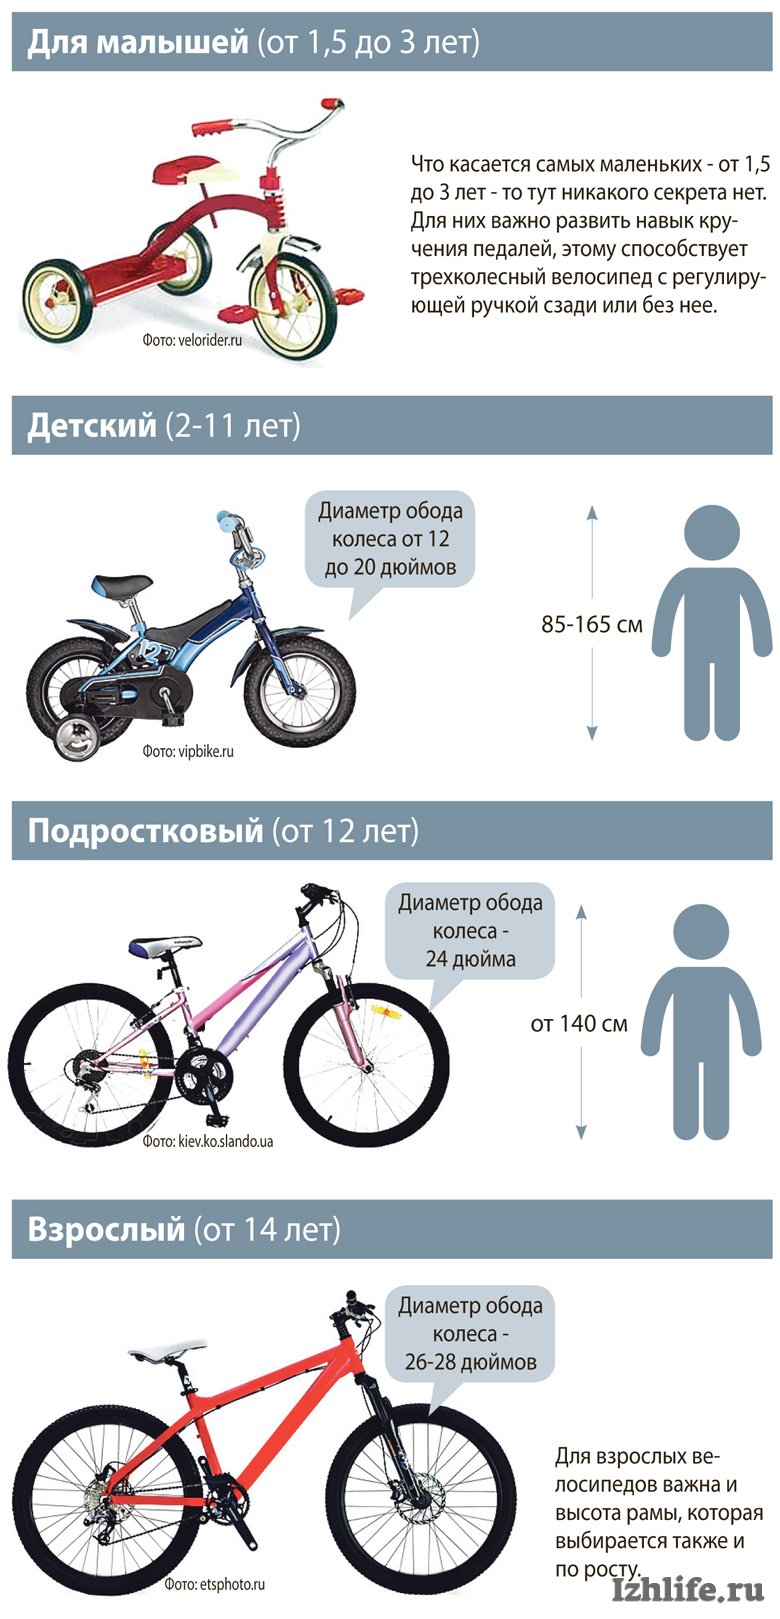 Как подобрать раму велосипеда по росту. Размер колес детского велосипеда по росту. Как выбрать велосипед для ребенка 4 года по росту и весу таблица. Таблица подбора велосипеда по росту ребенка рамы. Как выбрать раму для велосипеда по росту таблица.